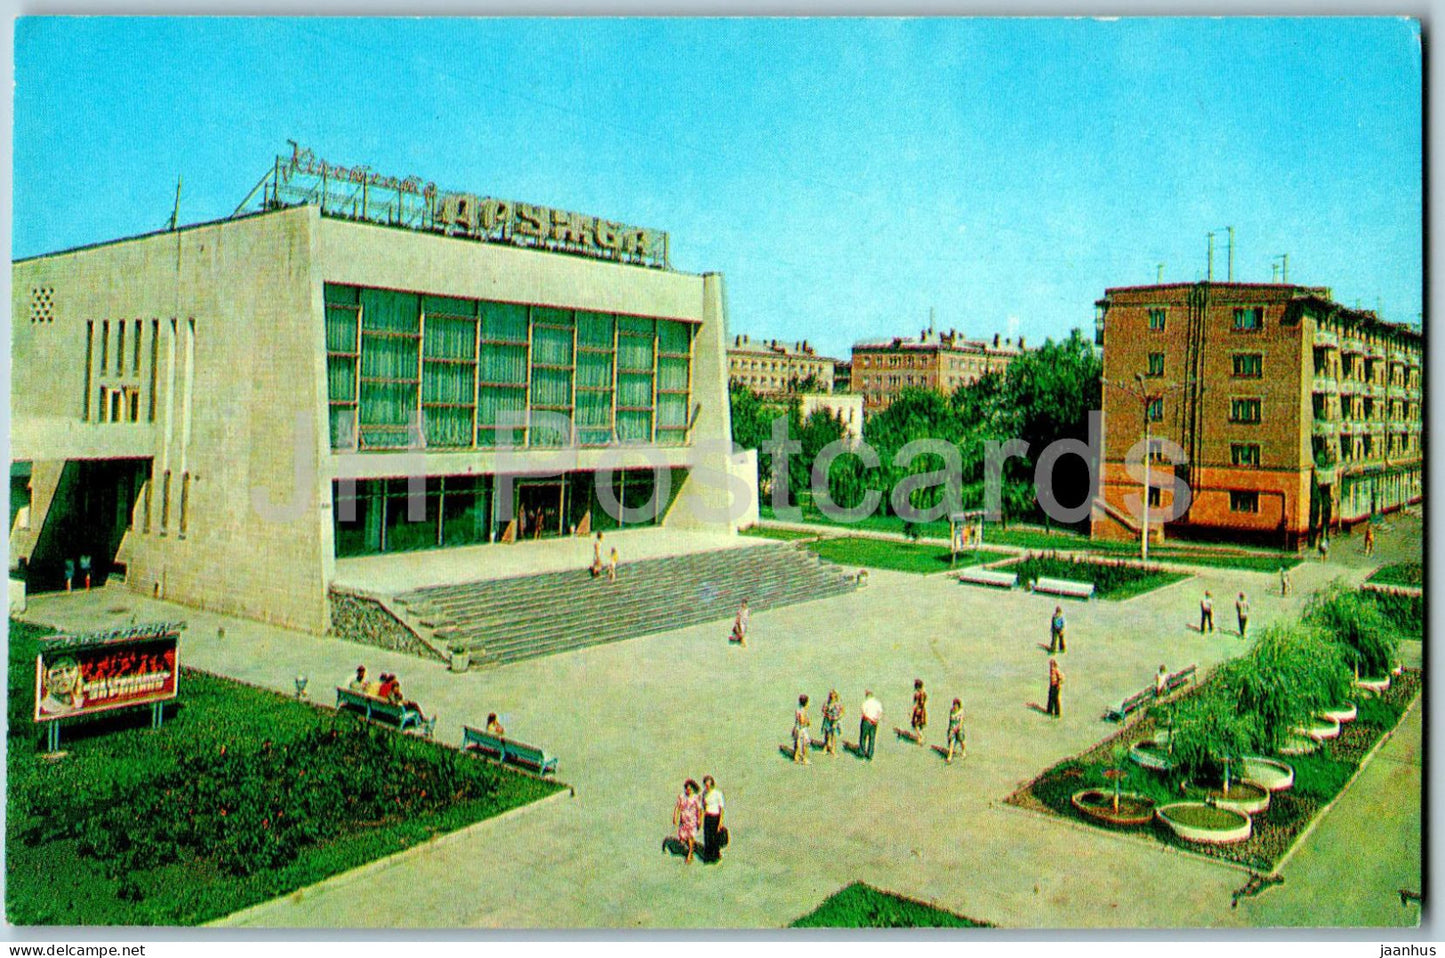 Sumy - cinema theatre Druzhba (Friendship) - 1976 - Ukraine USSR - unused - JH Postcards